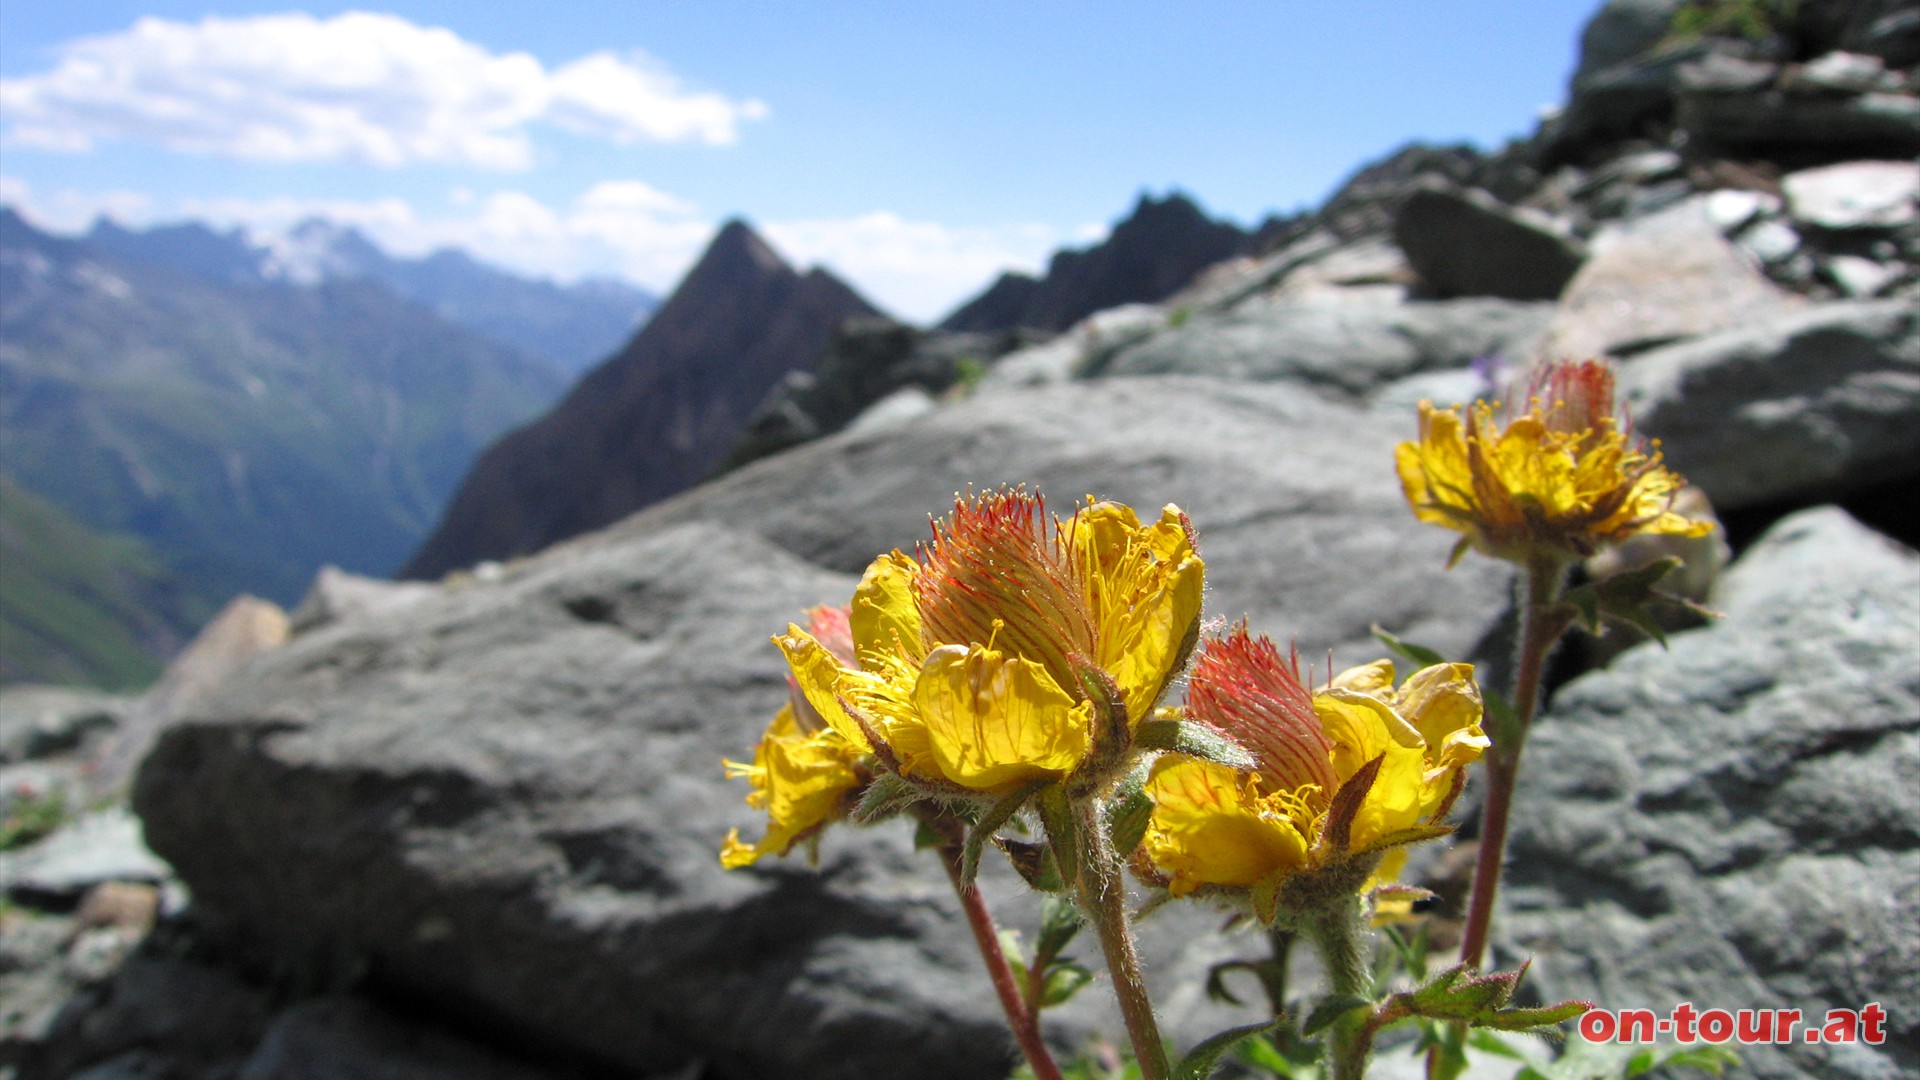 Prächtigen Alpenblumen. Im Hintergrund ragt die 
Freiwandspitze empor.